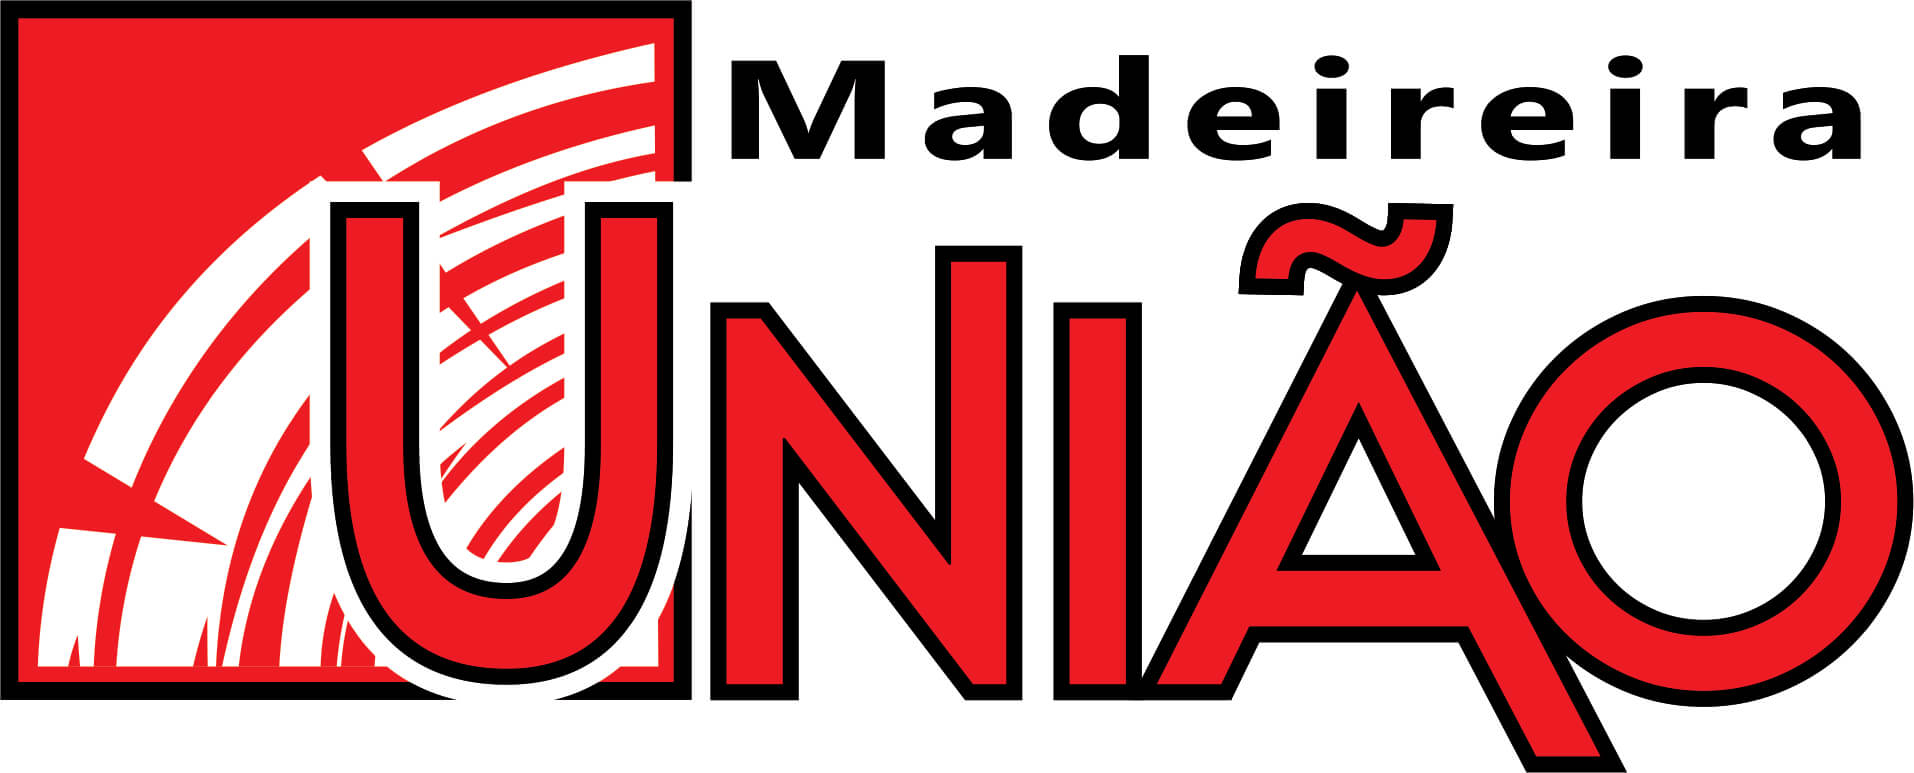 Madeireira União